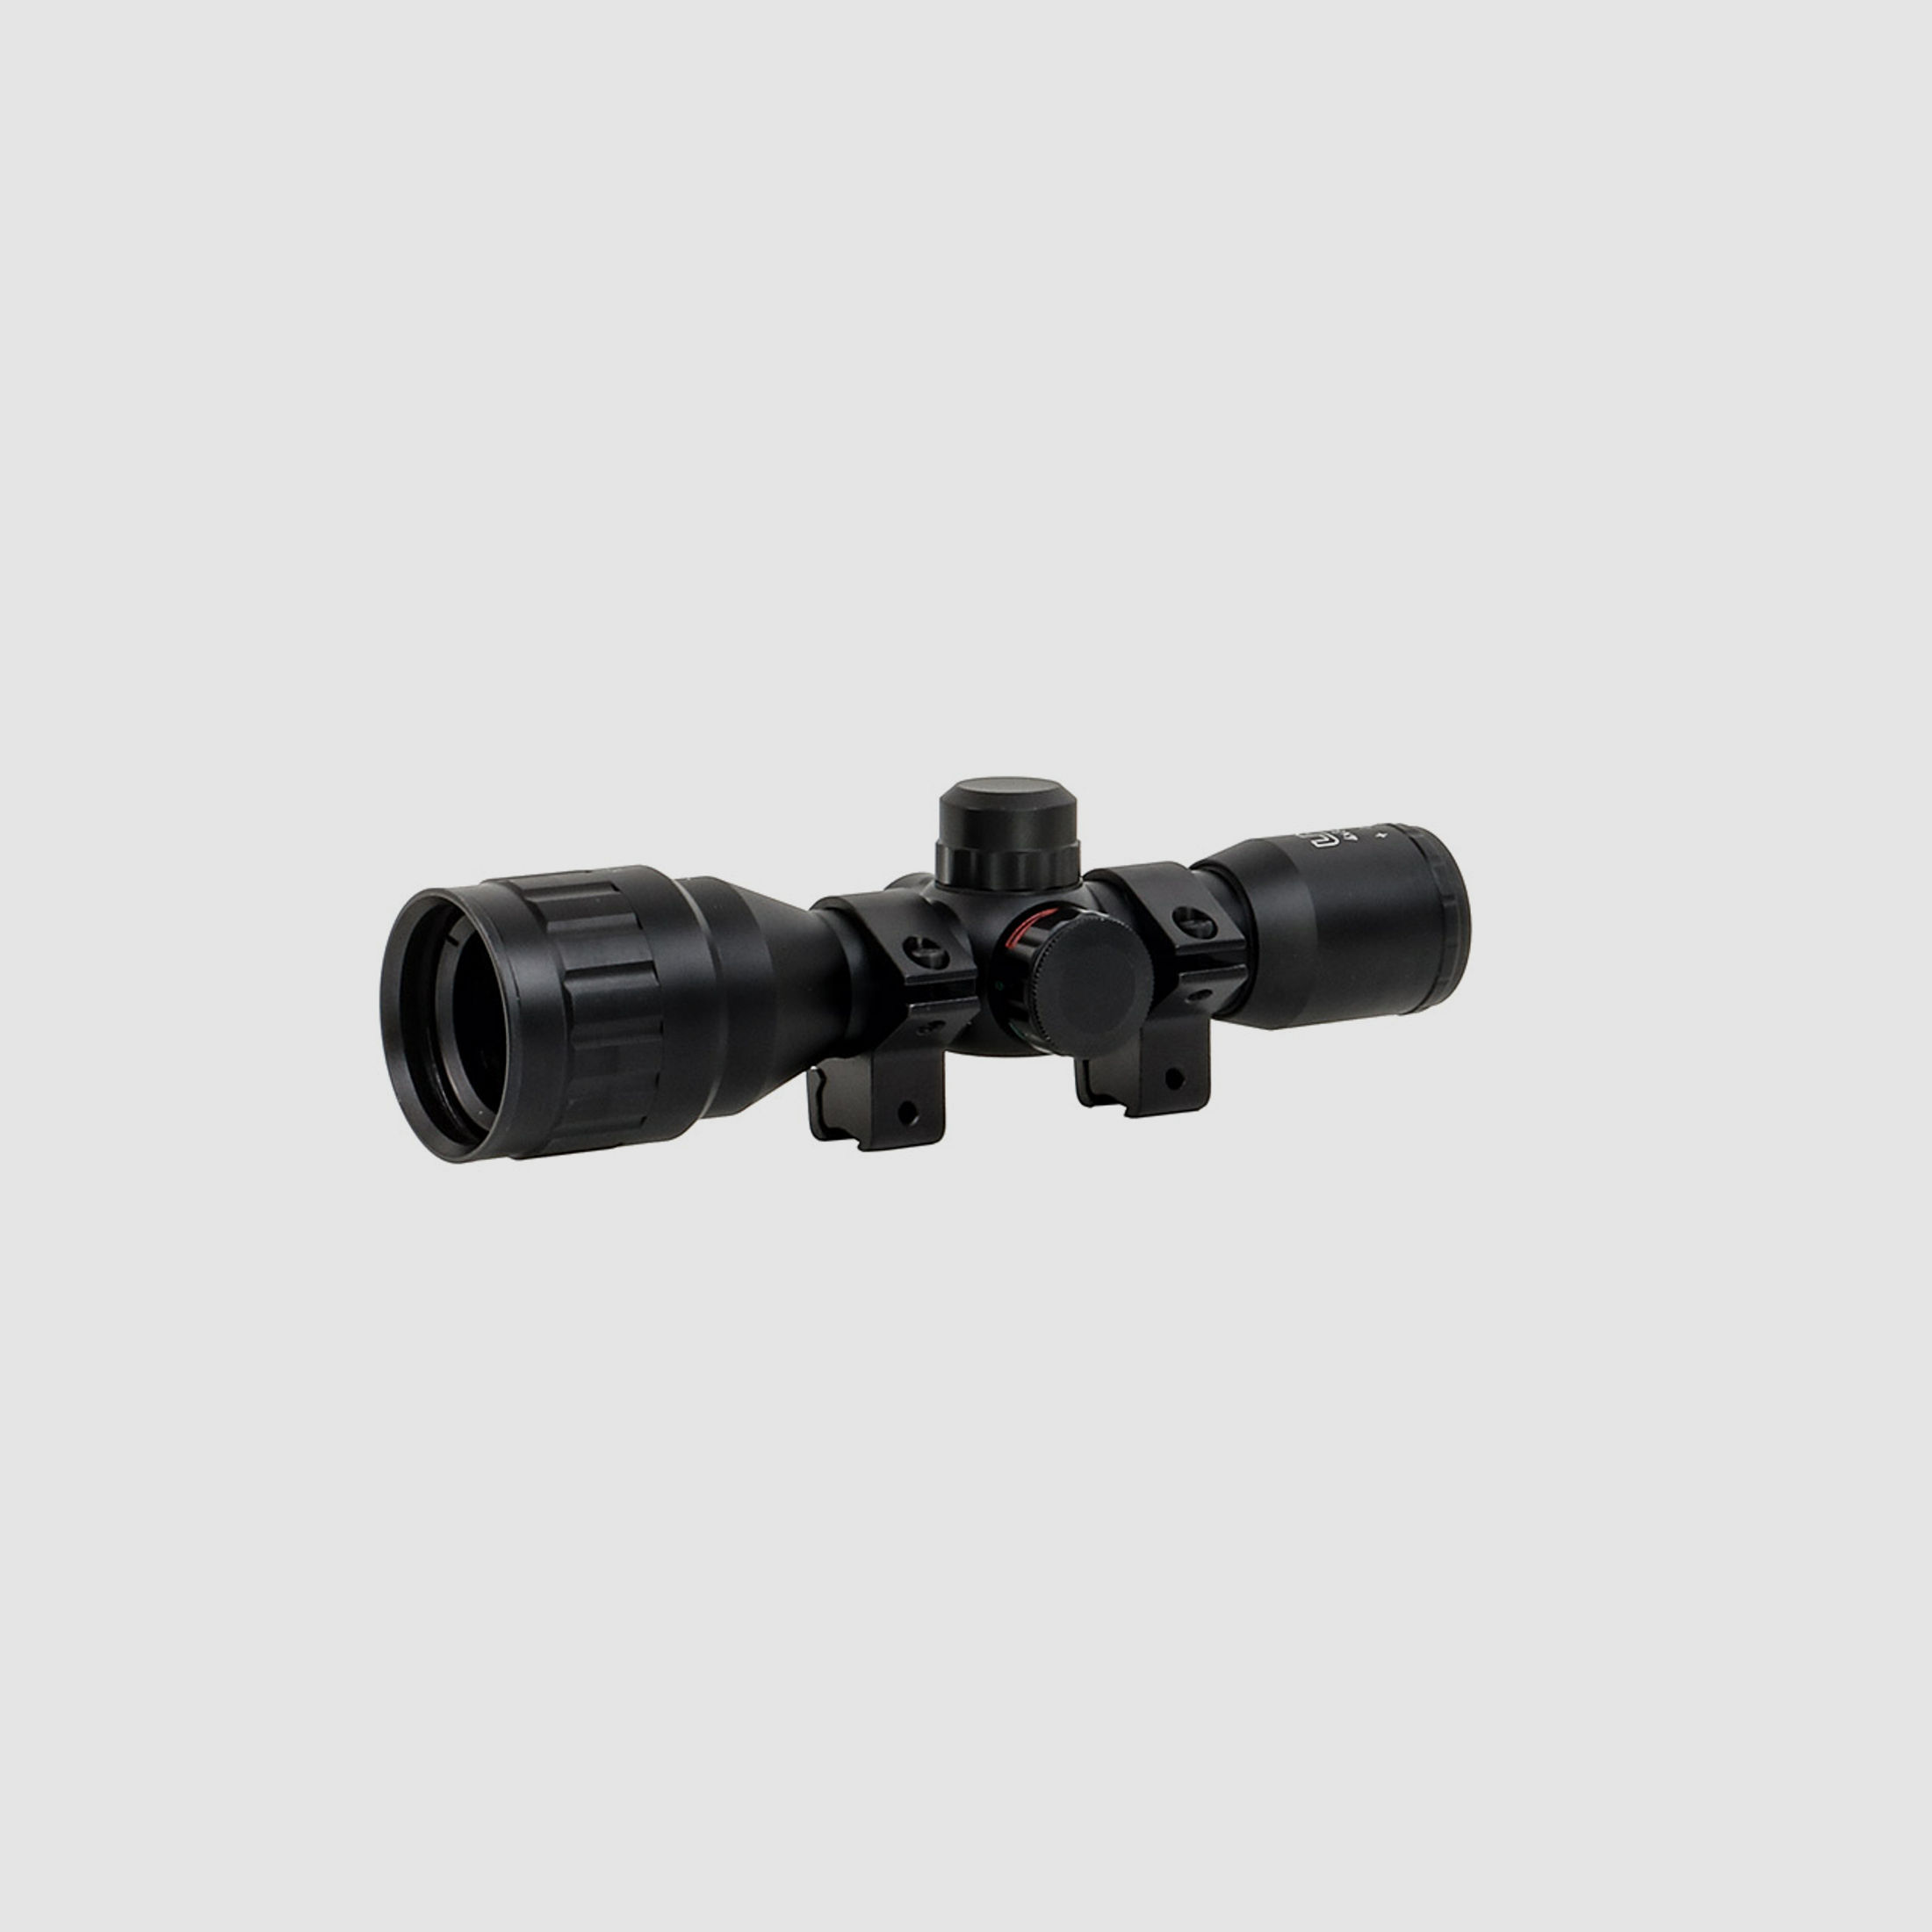 Zielfernrohr Umarex UX RS 4x32 FI, Duplex Absehen, rot-grĂĽn beleuchtet, inklusive Ringmontagen fĂĽr 11 mm Prismenschienen